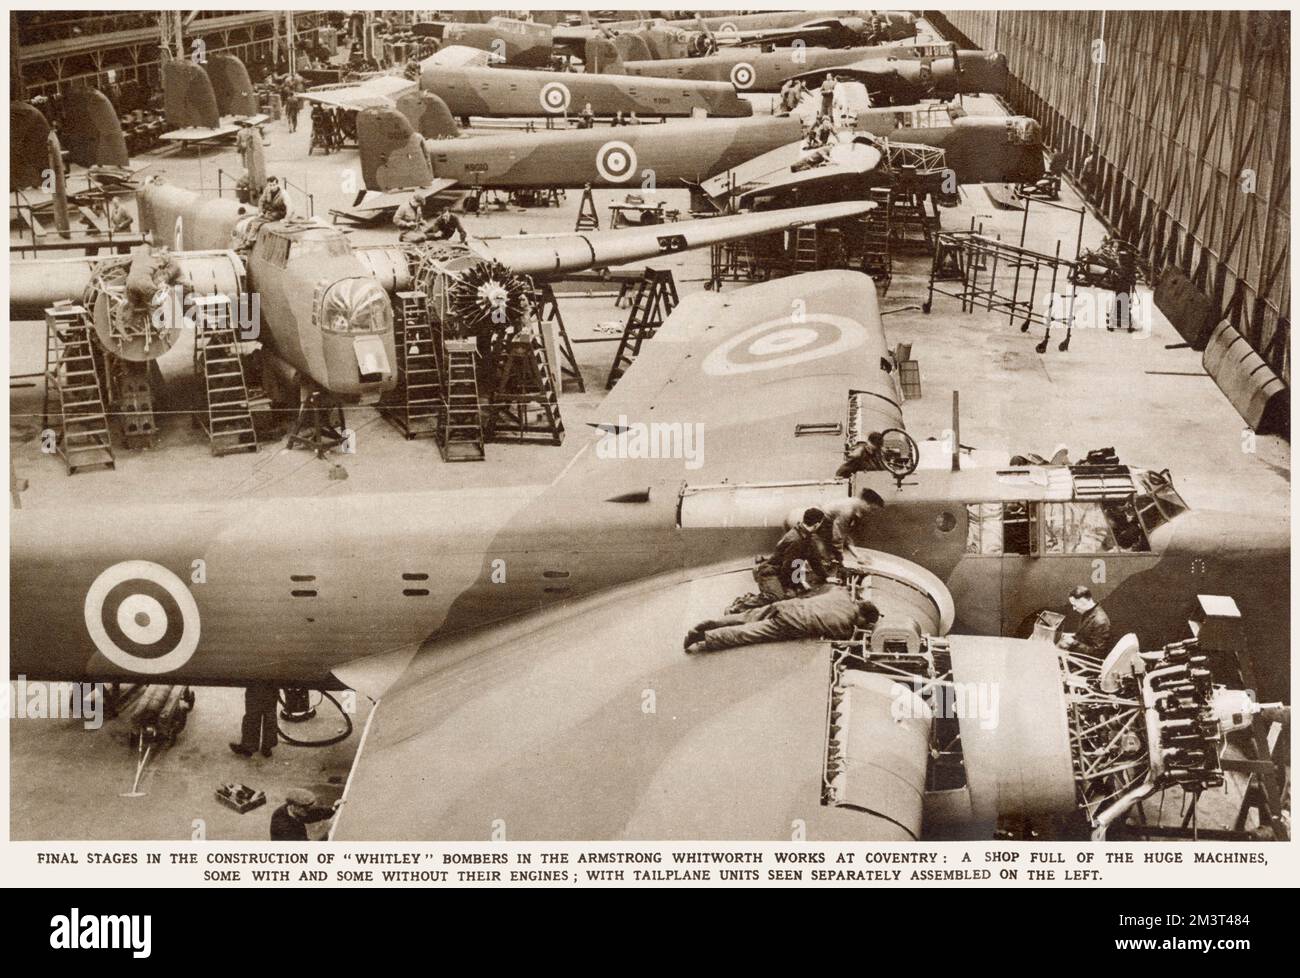 Fasi finali della costruzione del bombardiere Whitley presso le opere di Armstrong Whitworth a Coventry. Una stanza piena di enormi macchine, alcune con e senza motori. Data: Marzo 1939 Foto Stock